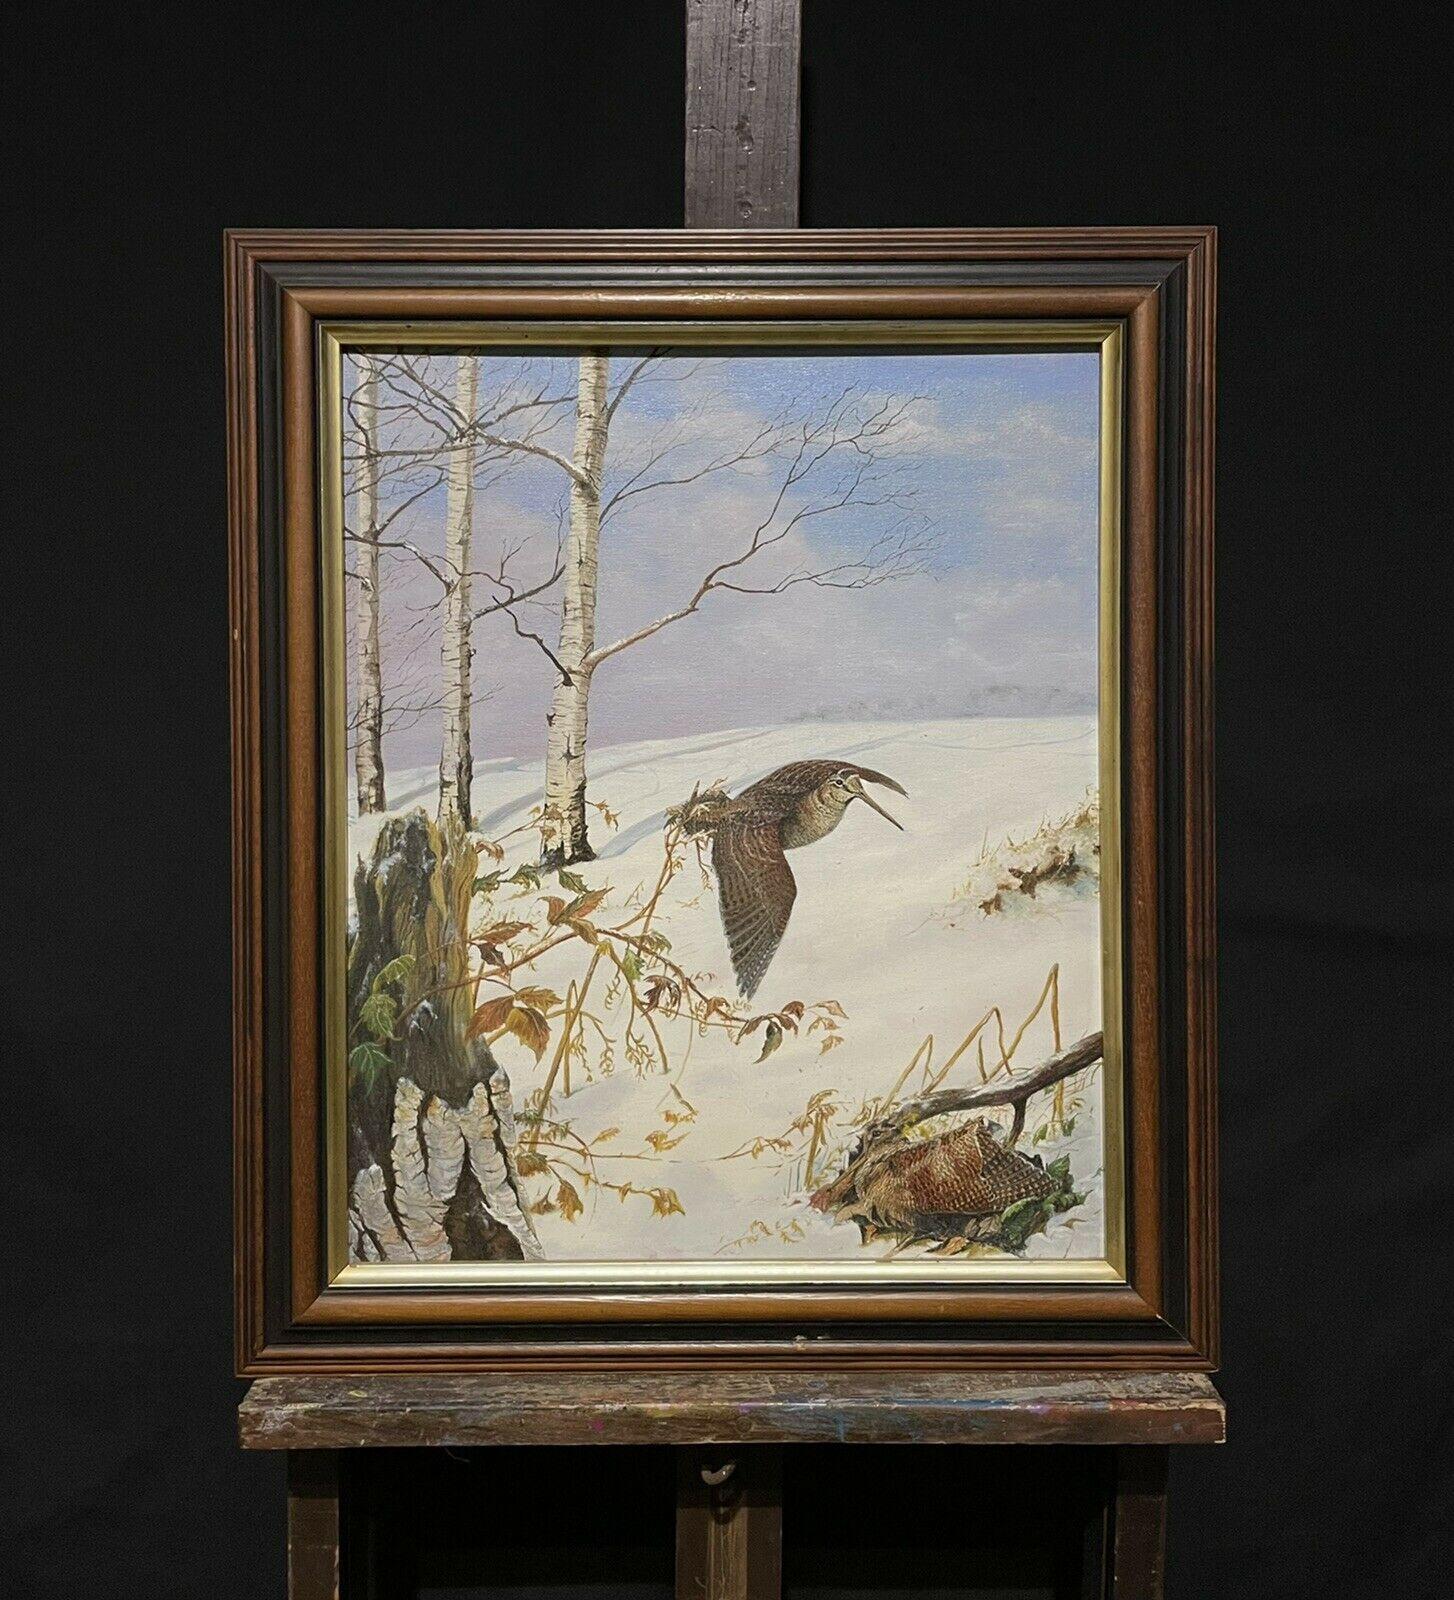 Woodcock/ Pichet dans un paysage de neige d'hiver, peinture à l'huile d'art sportif britannique - Painting de British Sporting Art